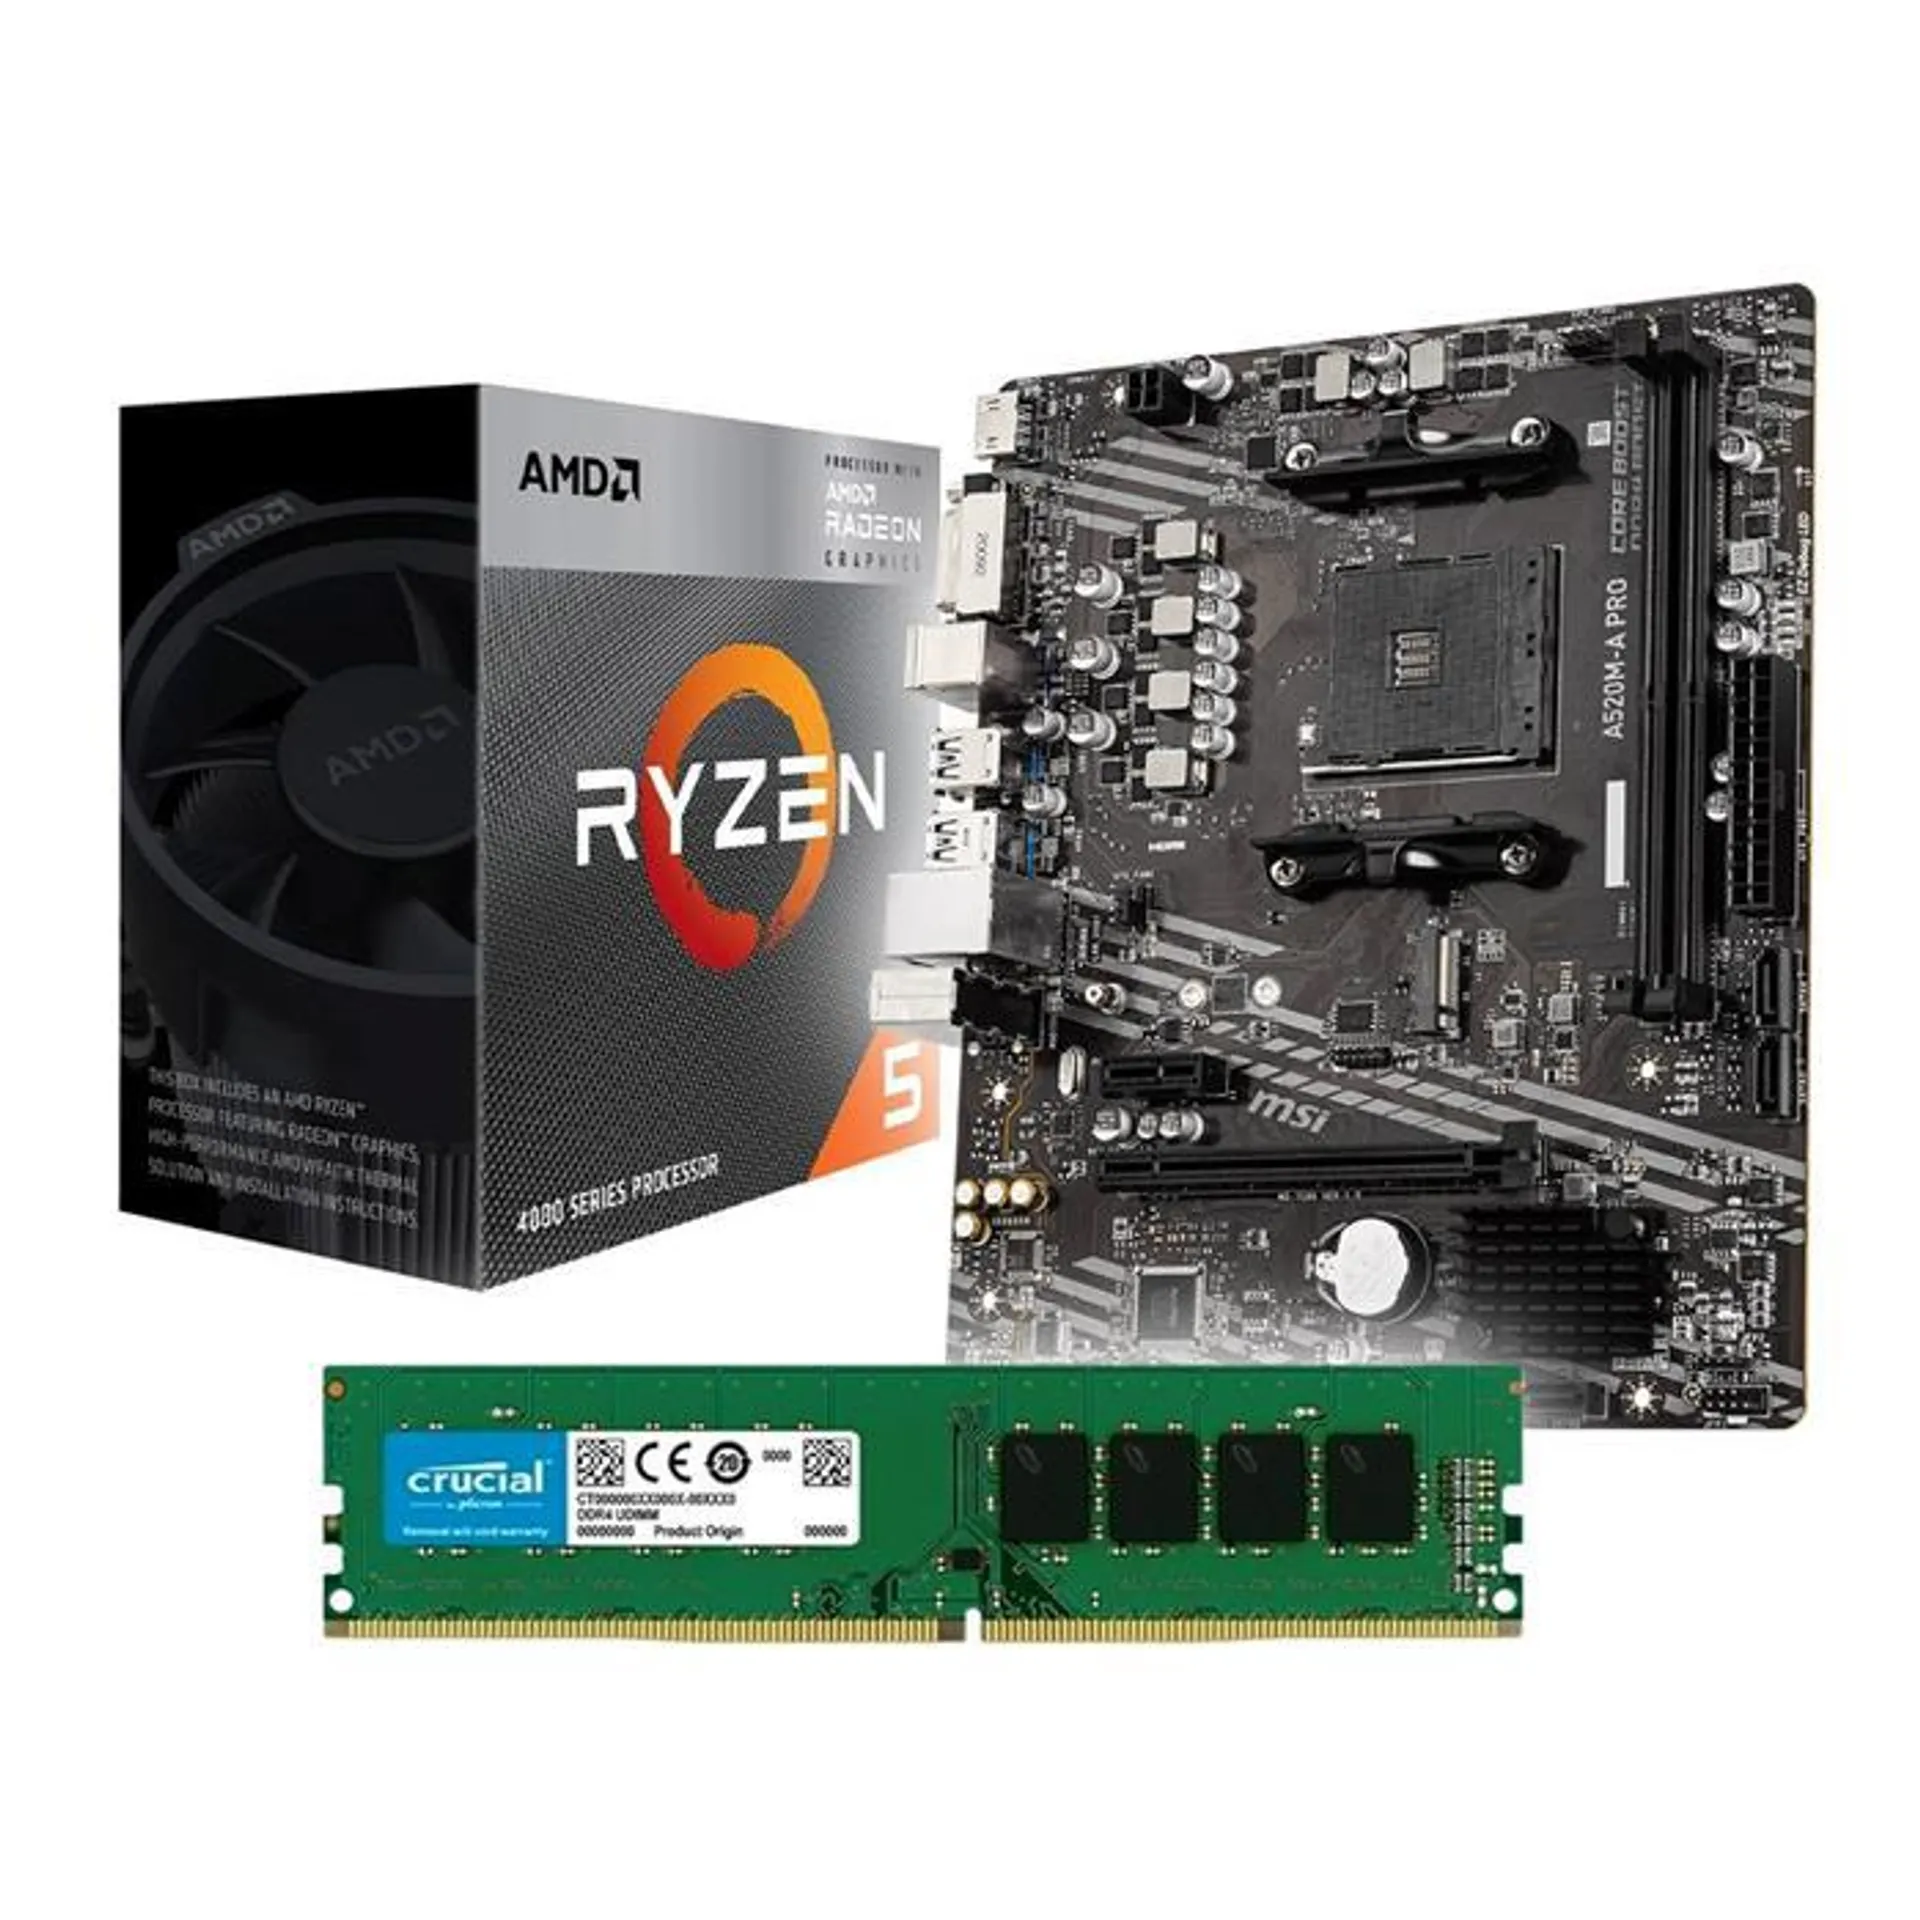 KIT ACTUALIZACION AMD RYZEN 5 4600G + MSI A520M-A PRO + 8GB DDR4 2666